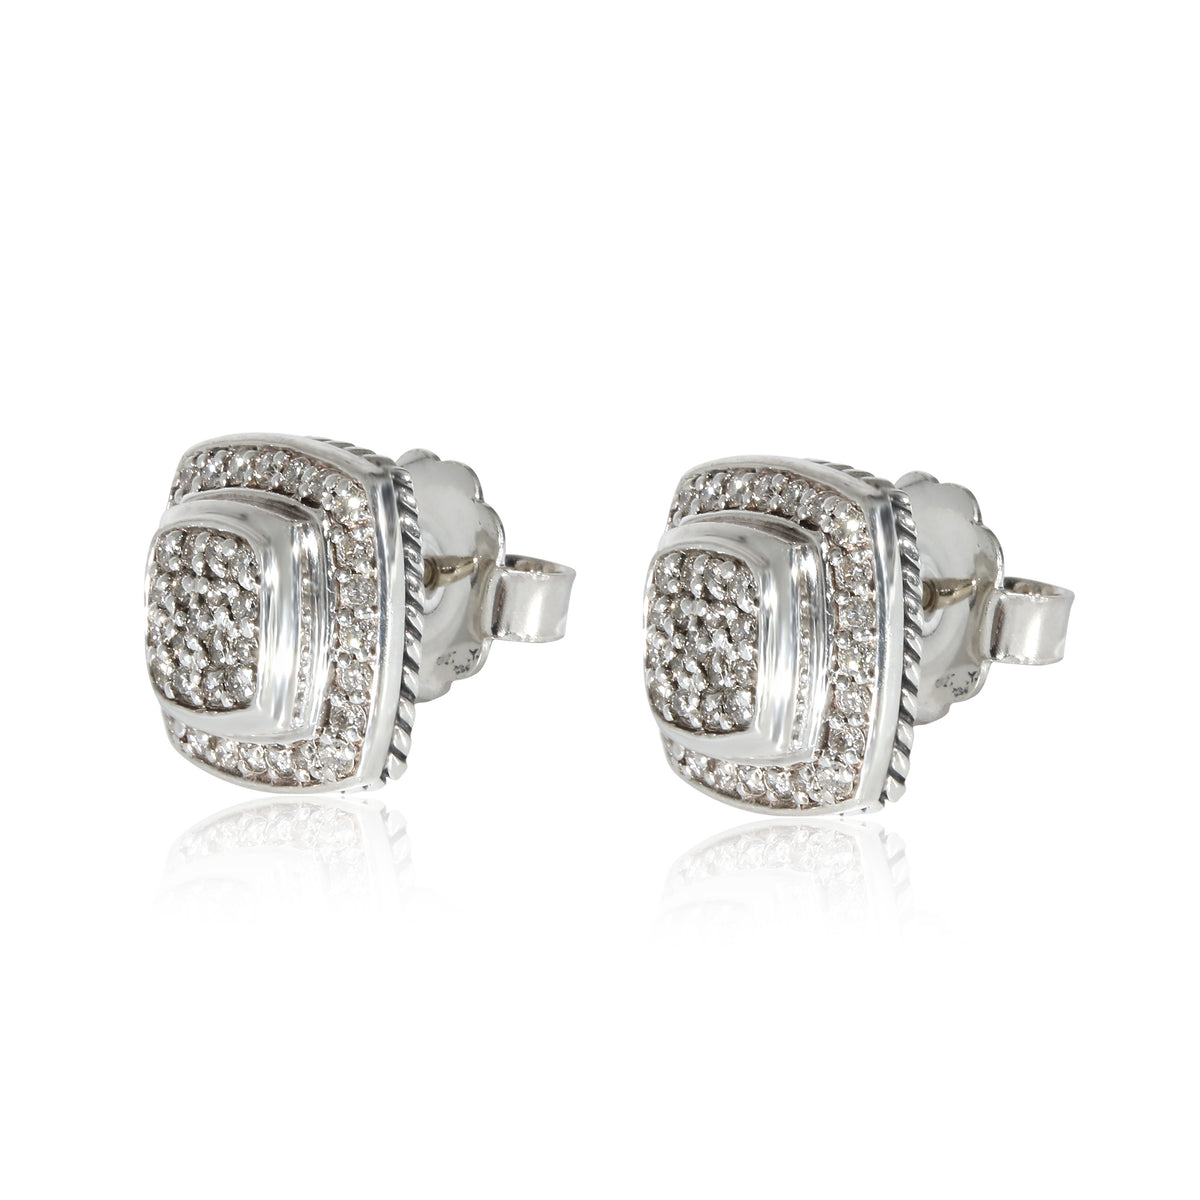 David Yurman Albion Pave Diamond Earrings in Sterling Silver 0.50 CTW